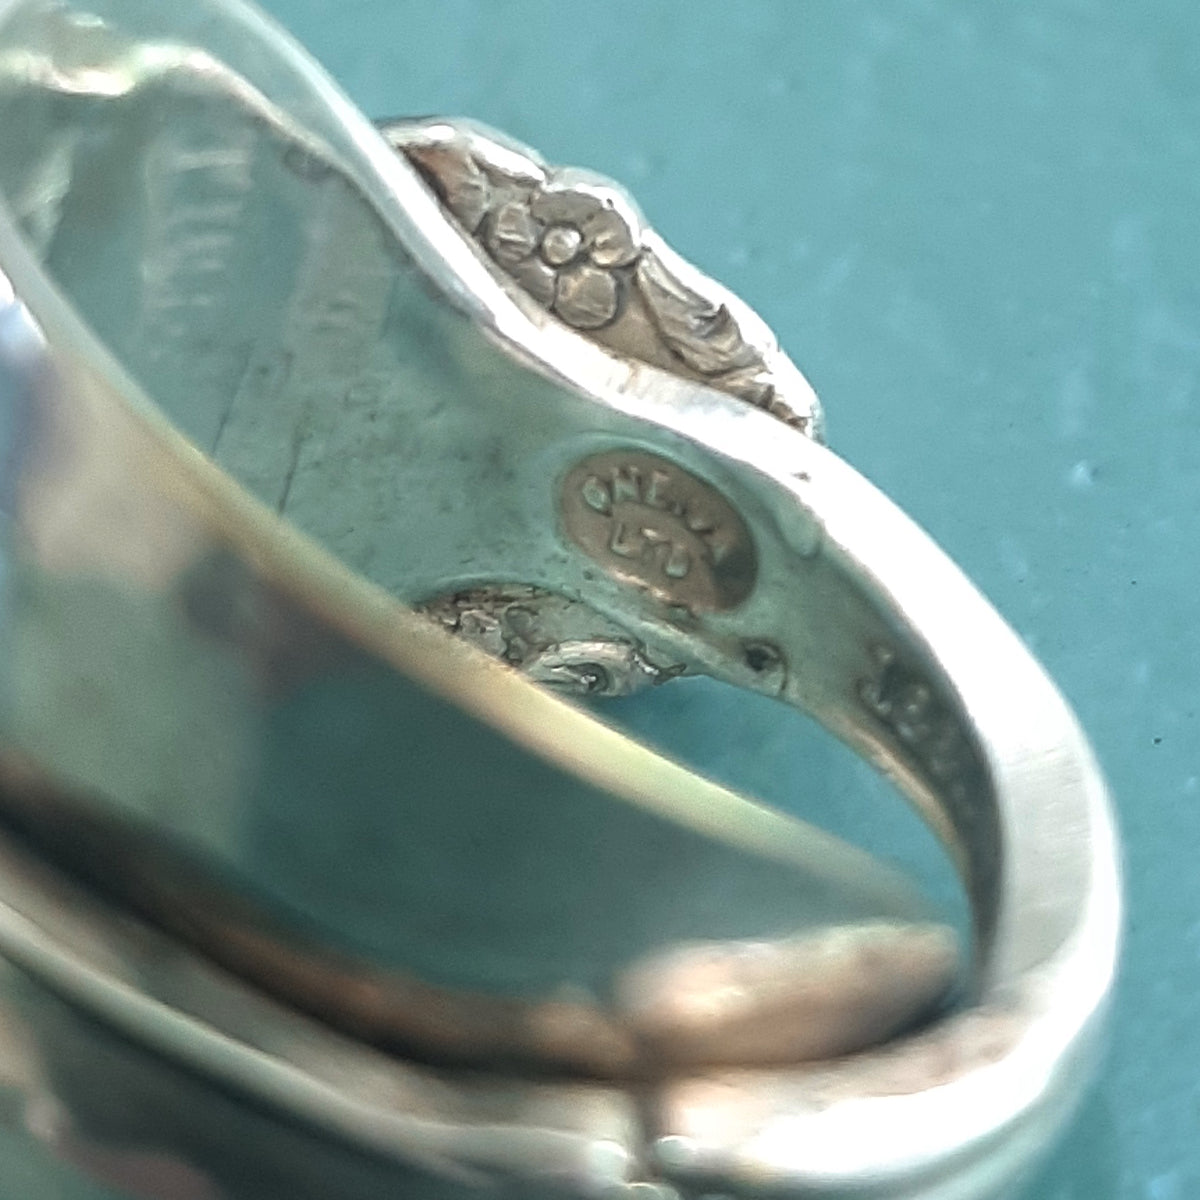 ヴィンテージ シルバー925 オネイダ 1881年 スプーンリング 14号7.5g / Vintage Sterling Silver 1881 Oneida Spoon Ring